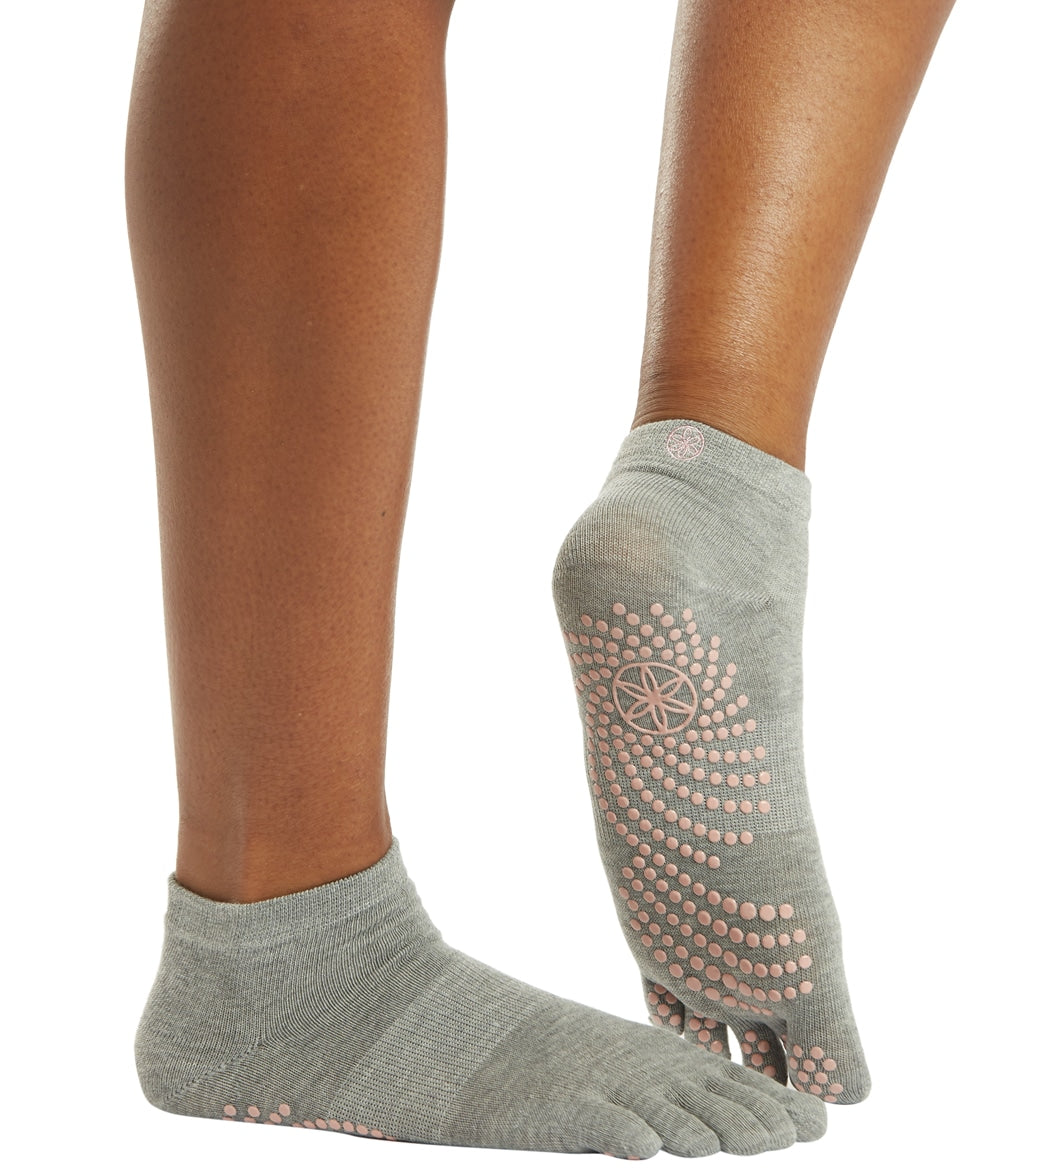 Gaiam Grippy Yoga Socks at